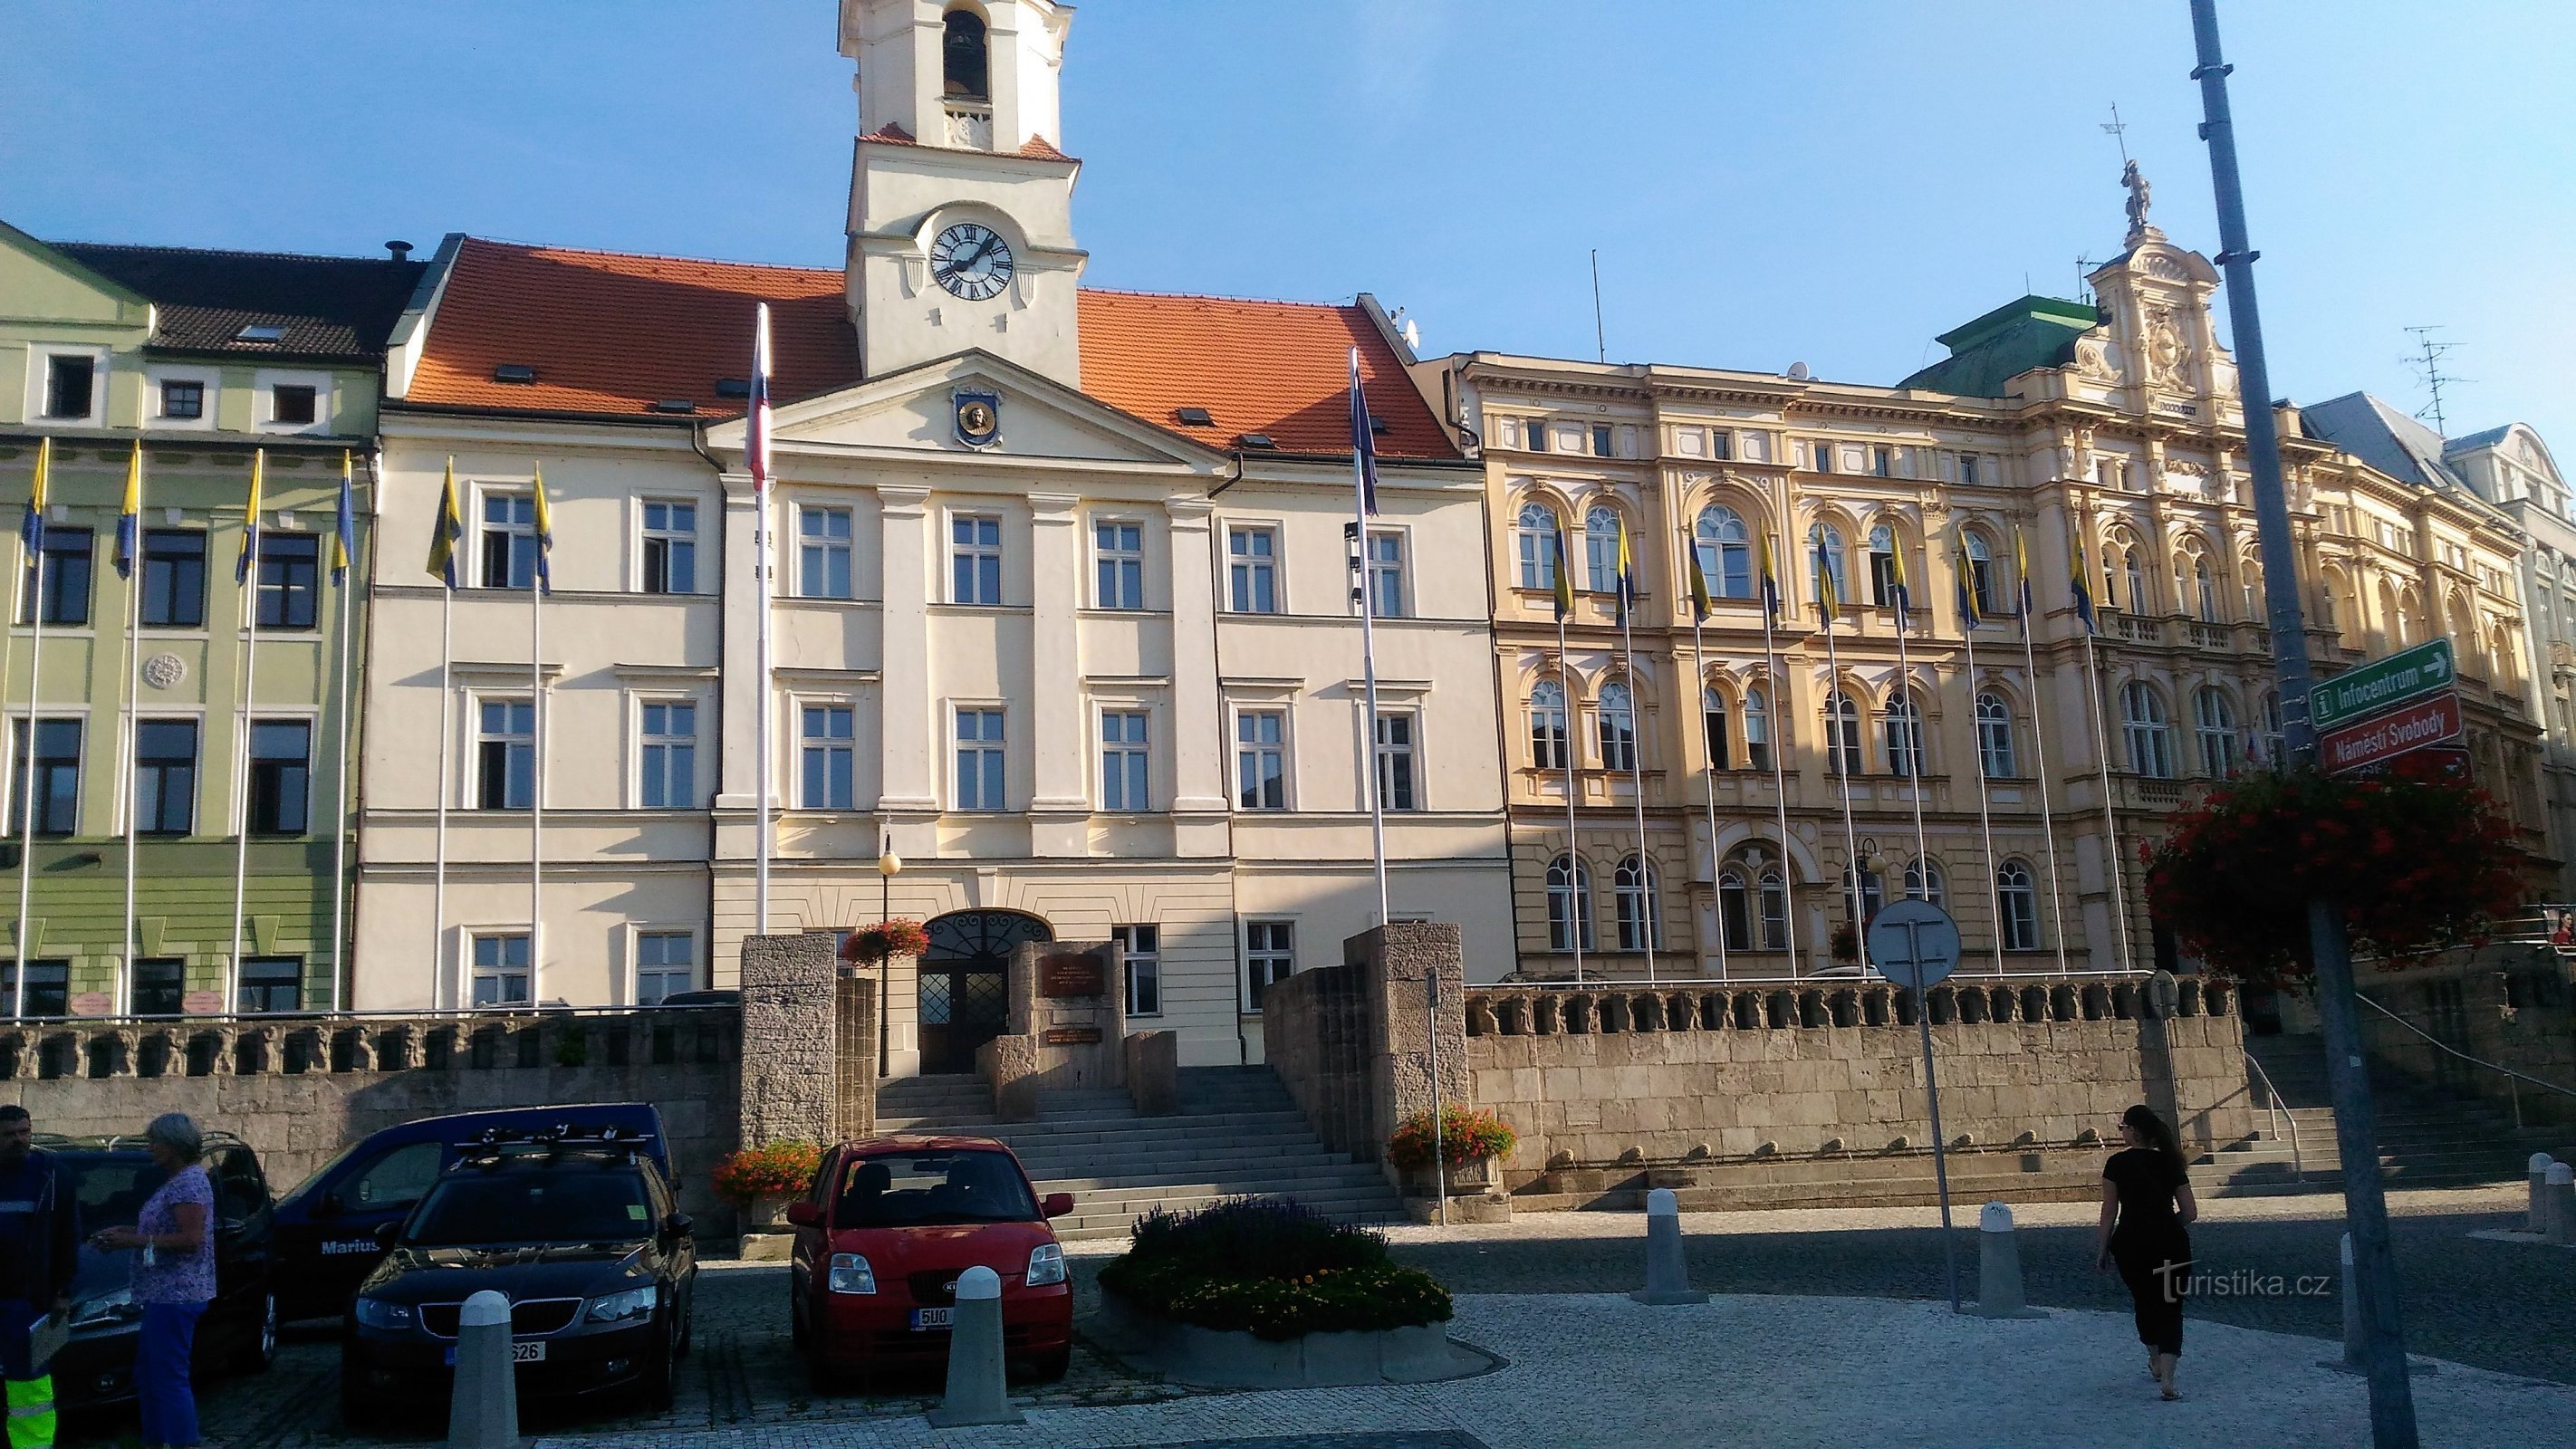 Μνημείο στη σκάλα μπροστά από το δημοτικό κτίριο στο Teplice